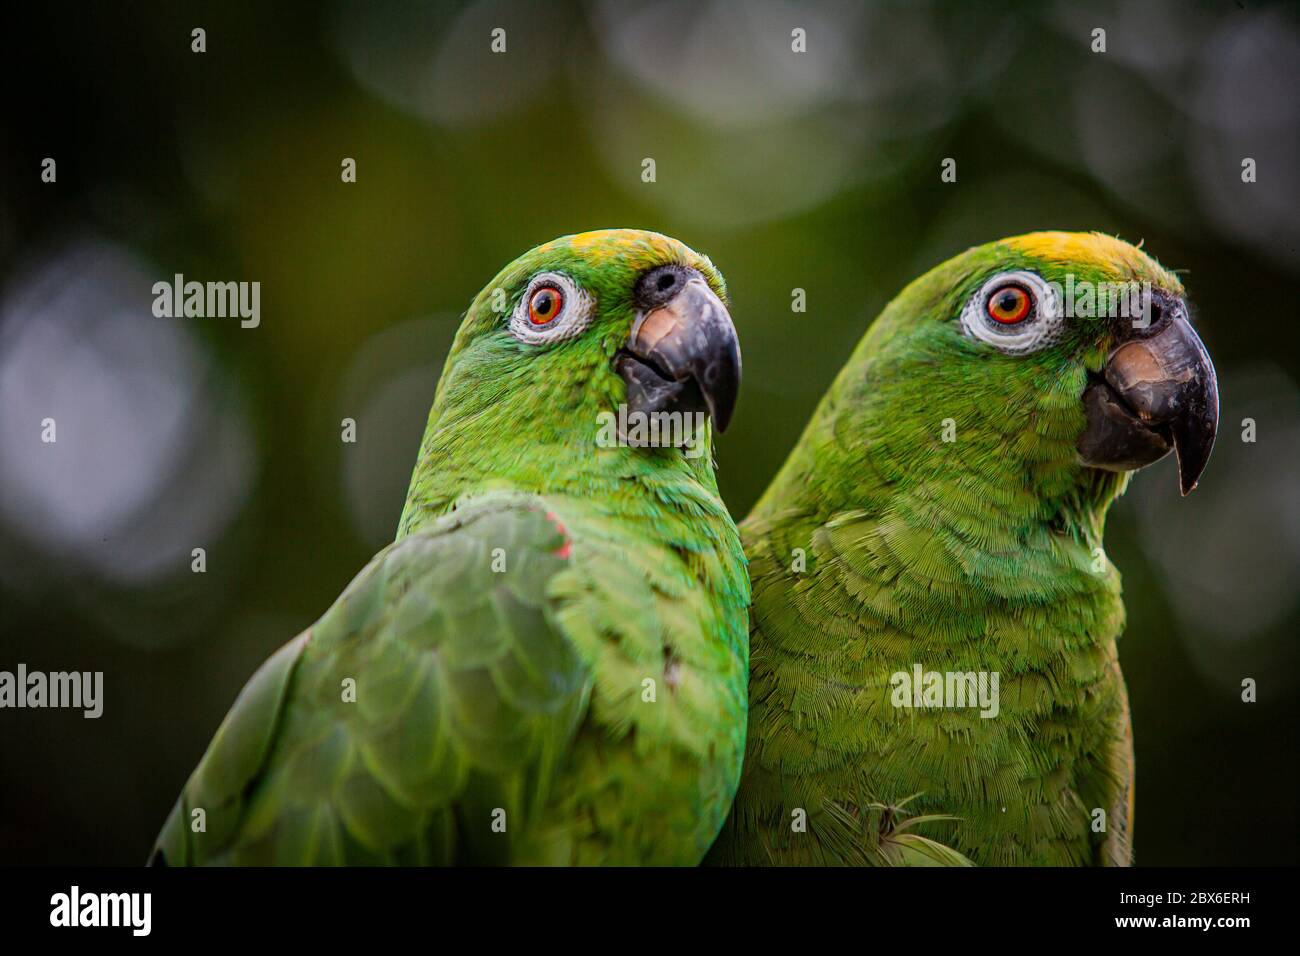 Scaly naped parrots (Amazona mercenaria) Stock Photo